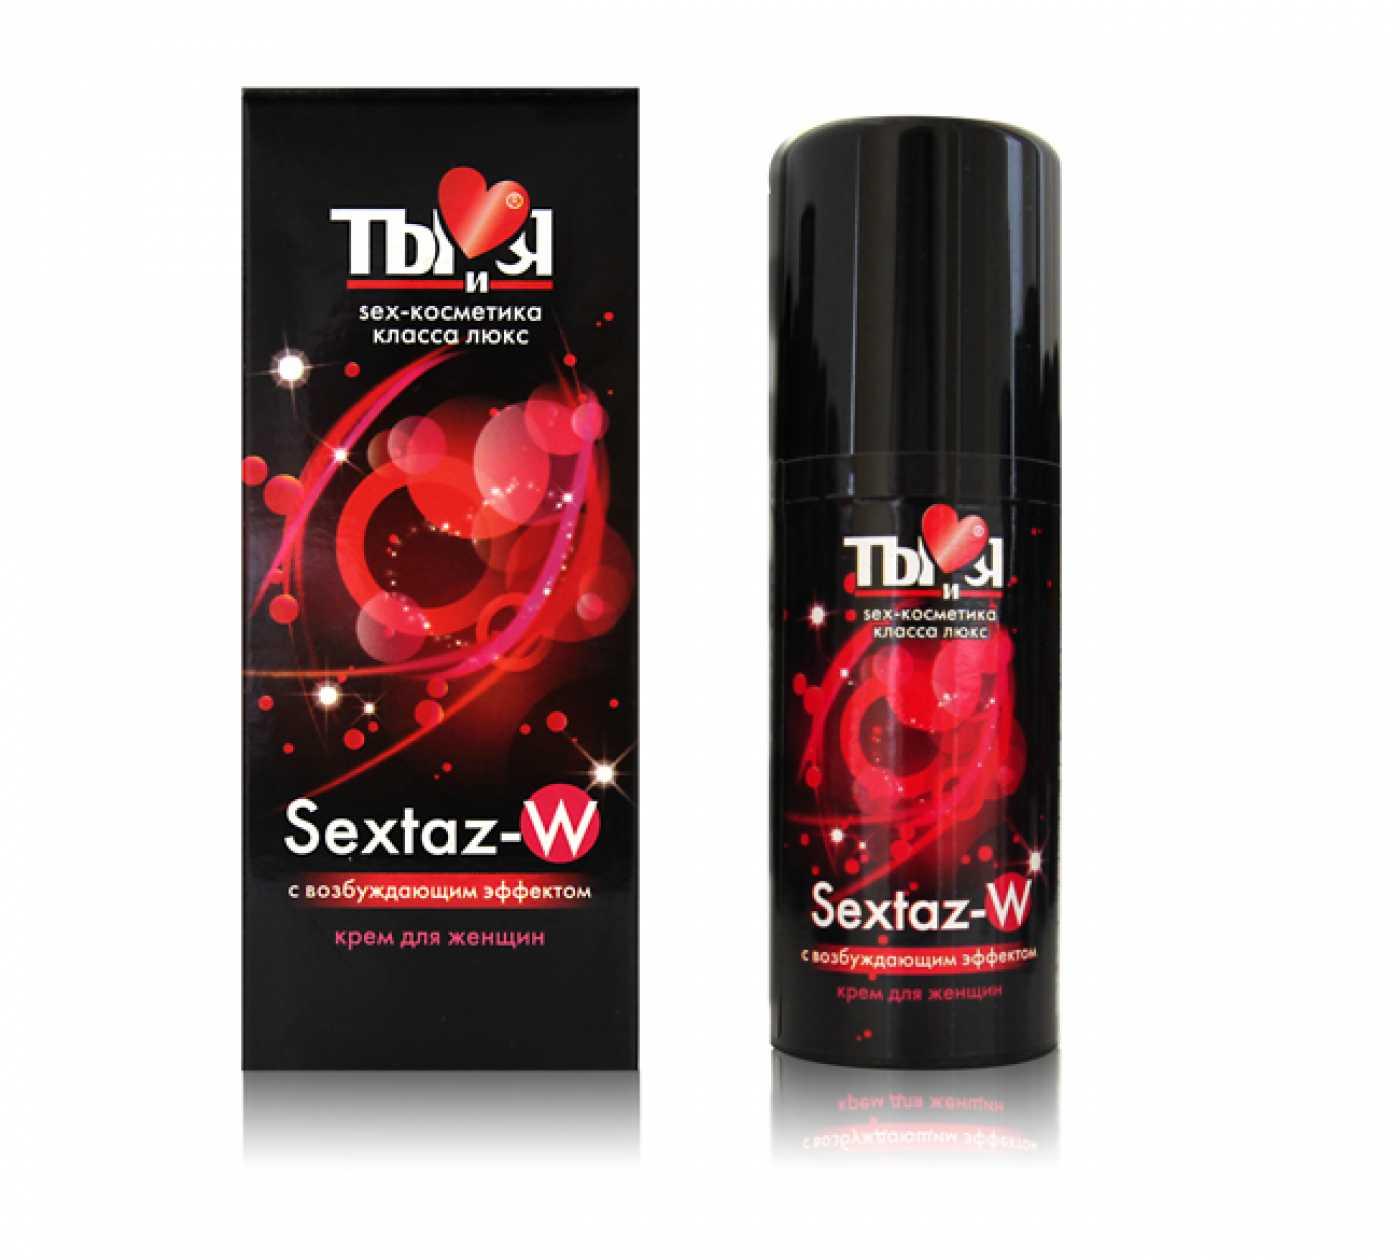 SEXTAZ-W крем для женщин с возбуждающим эффектом 20 г. Vestalshop.ru - Изображение 4